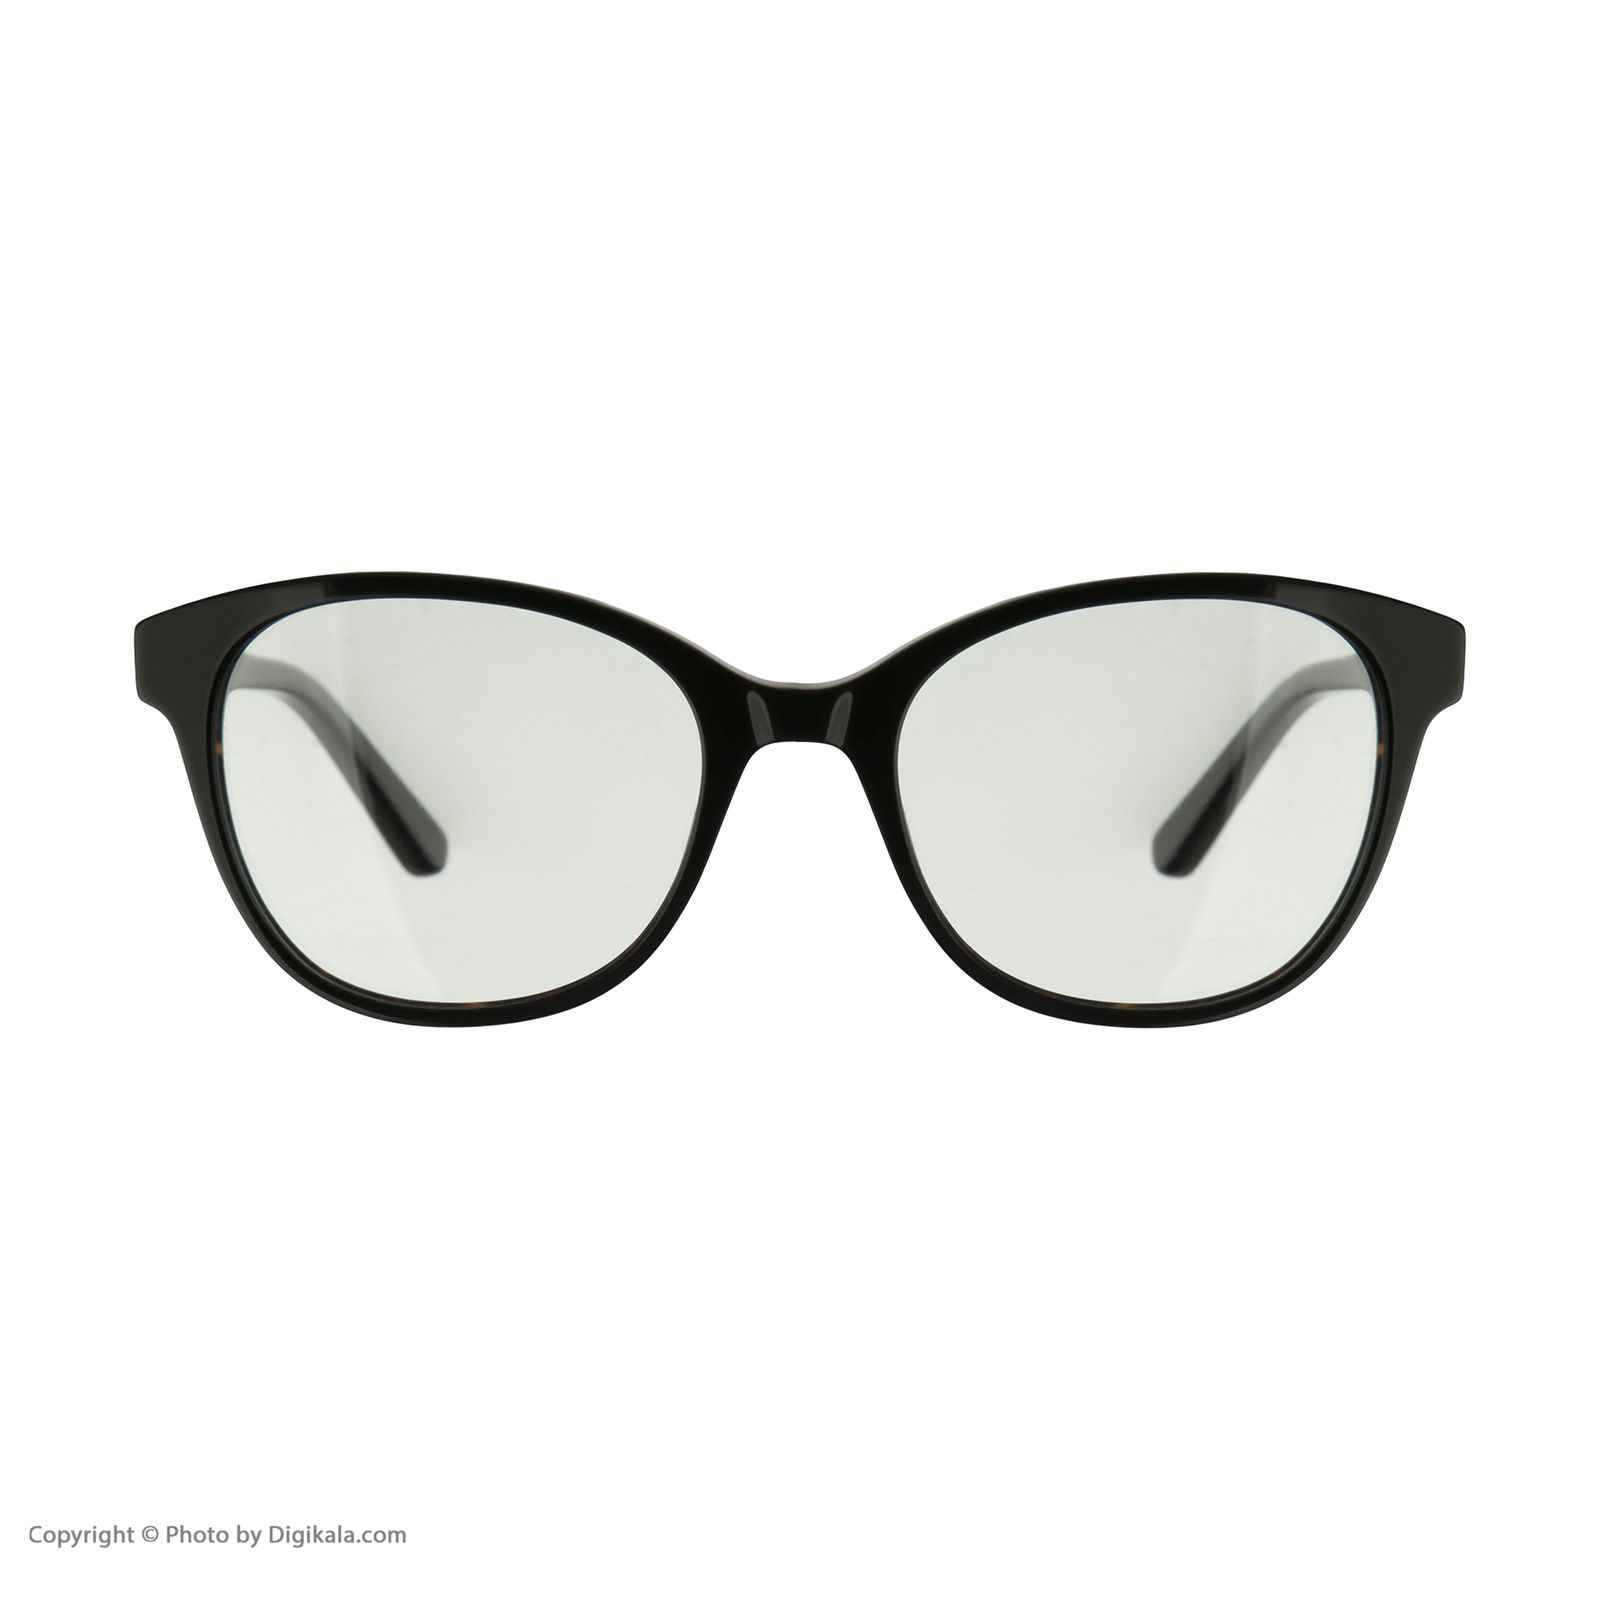 فریم عینک طبی کارل لاگرفلد مدل KL970V123 -  - 2